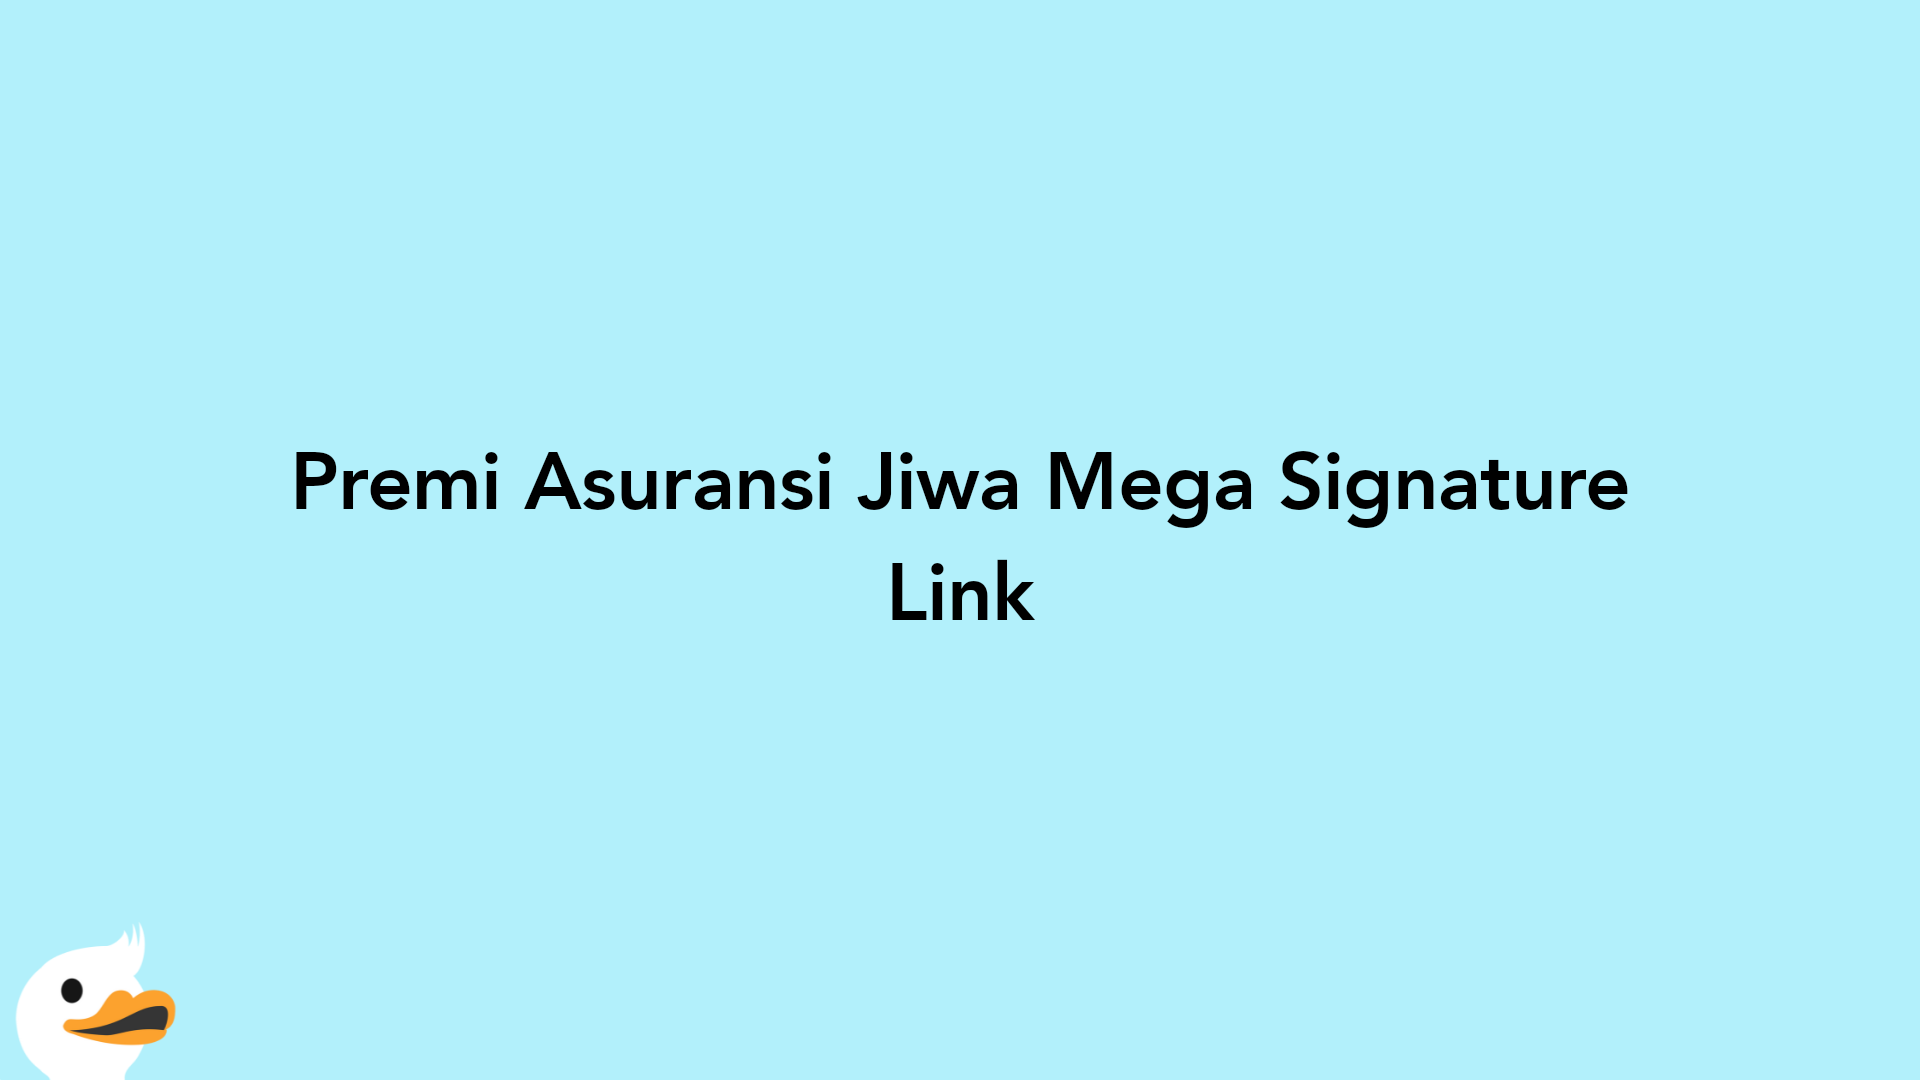 Premi Asuransi Jiwa Mega Signature Link